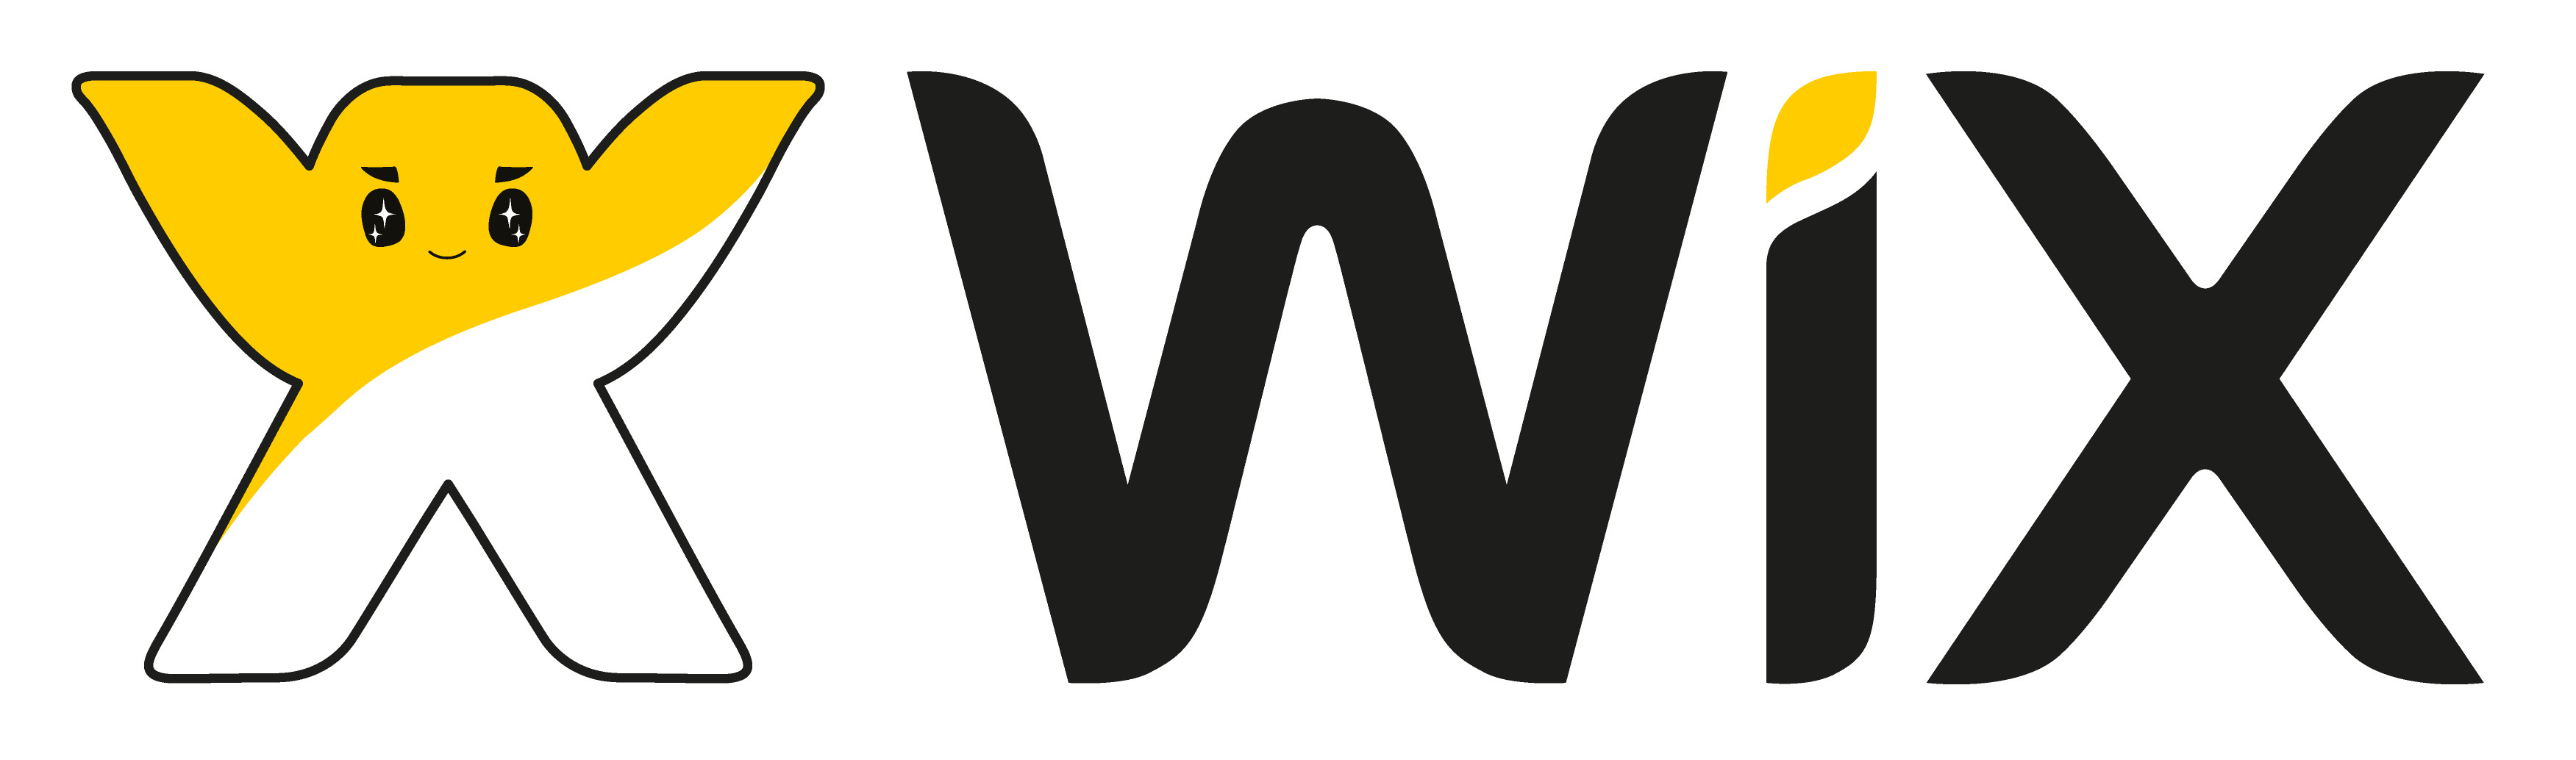 Wix.com to Present a